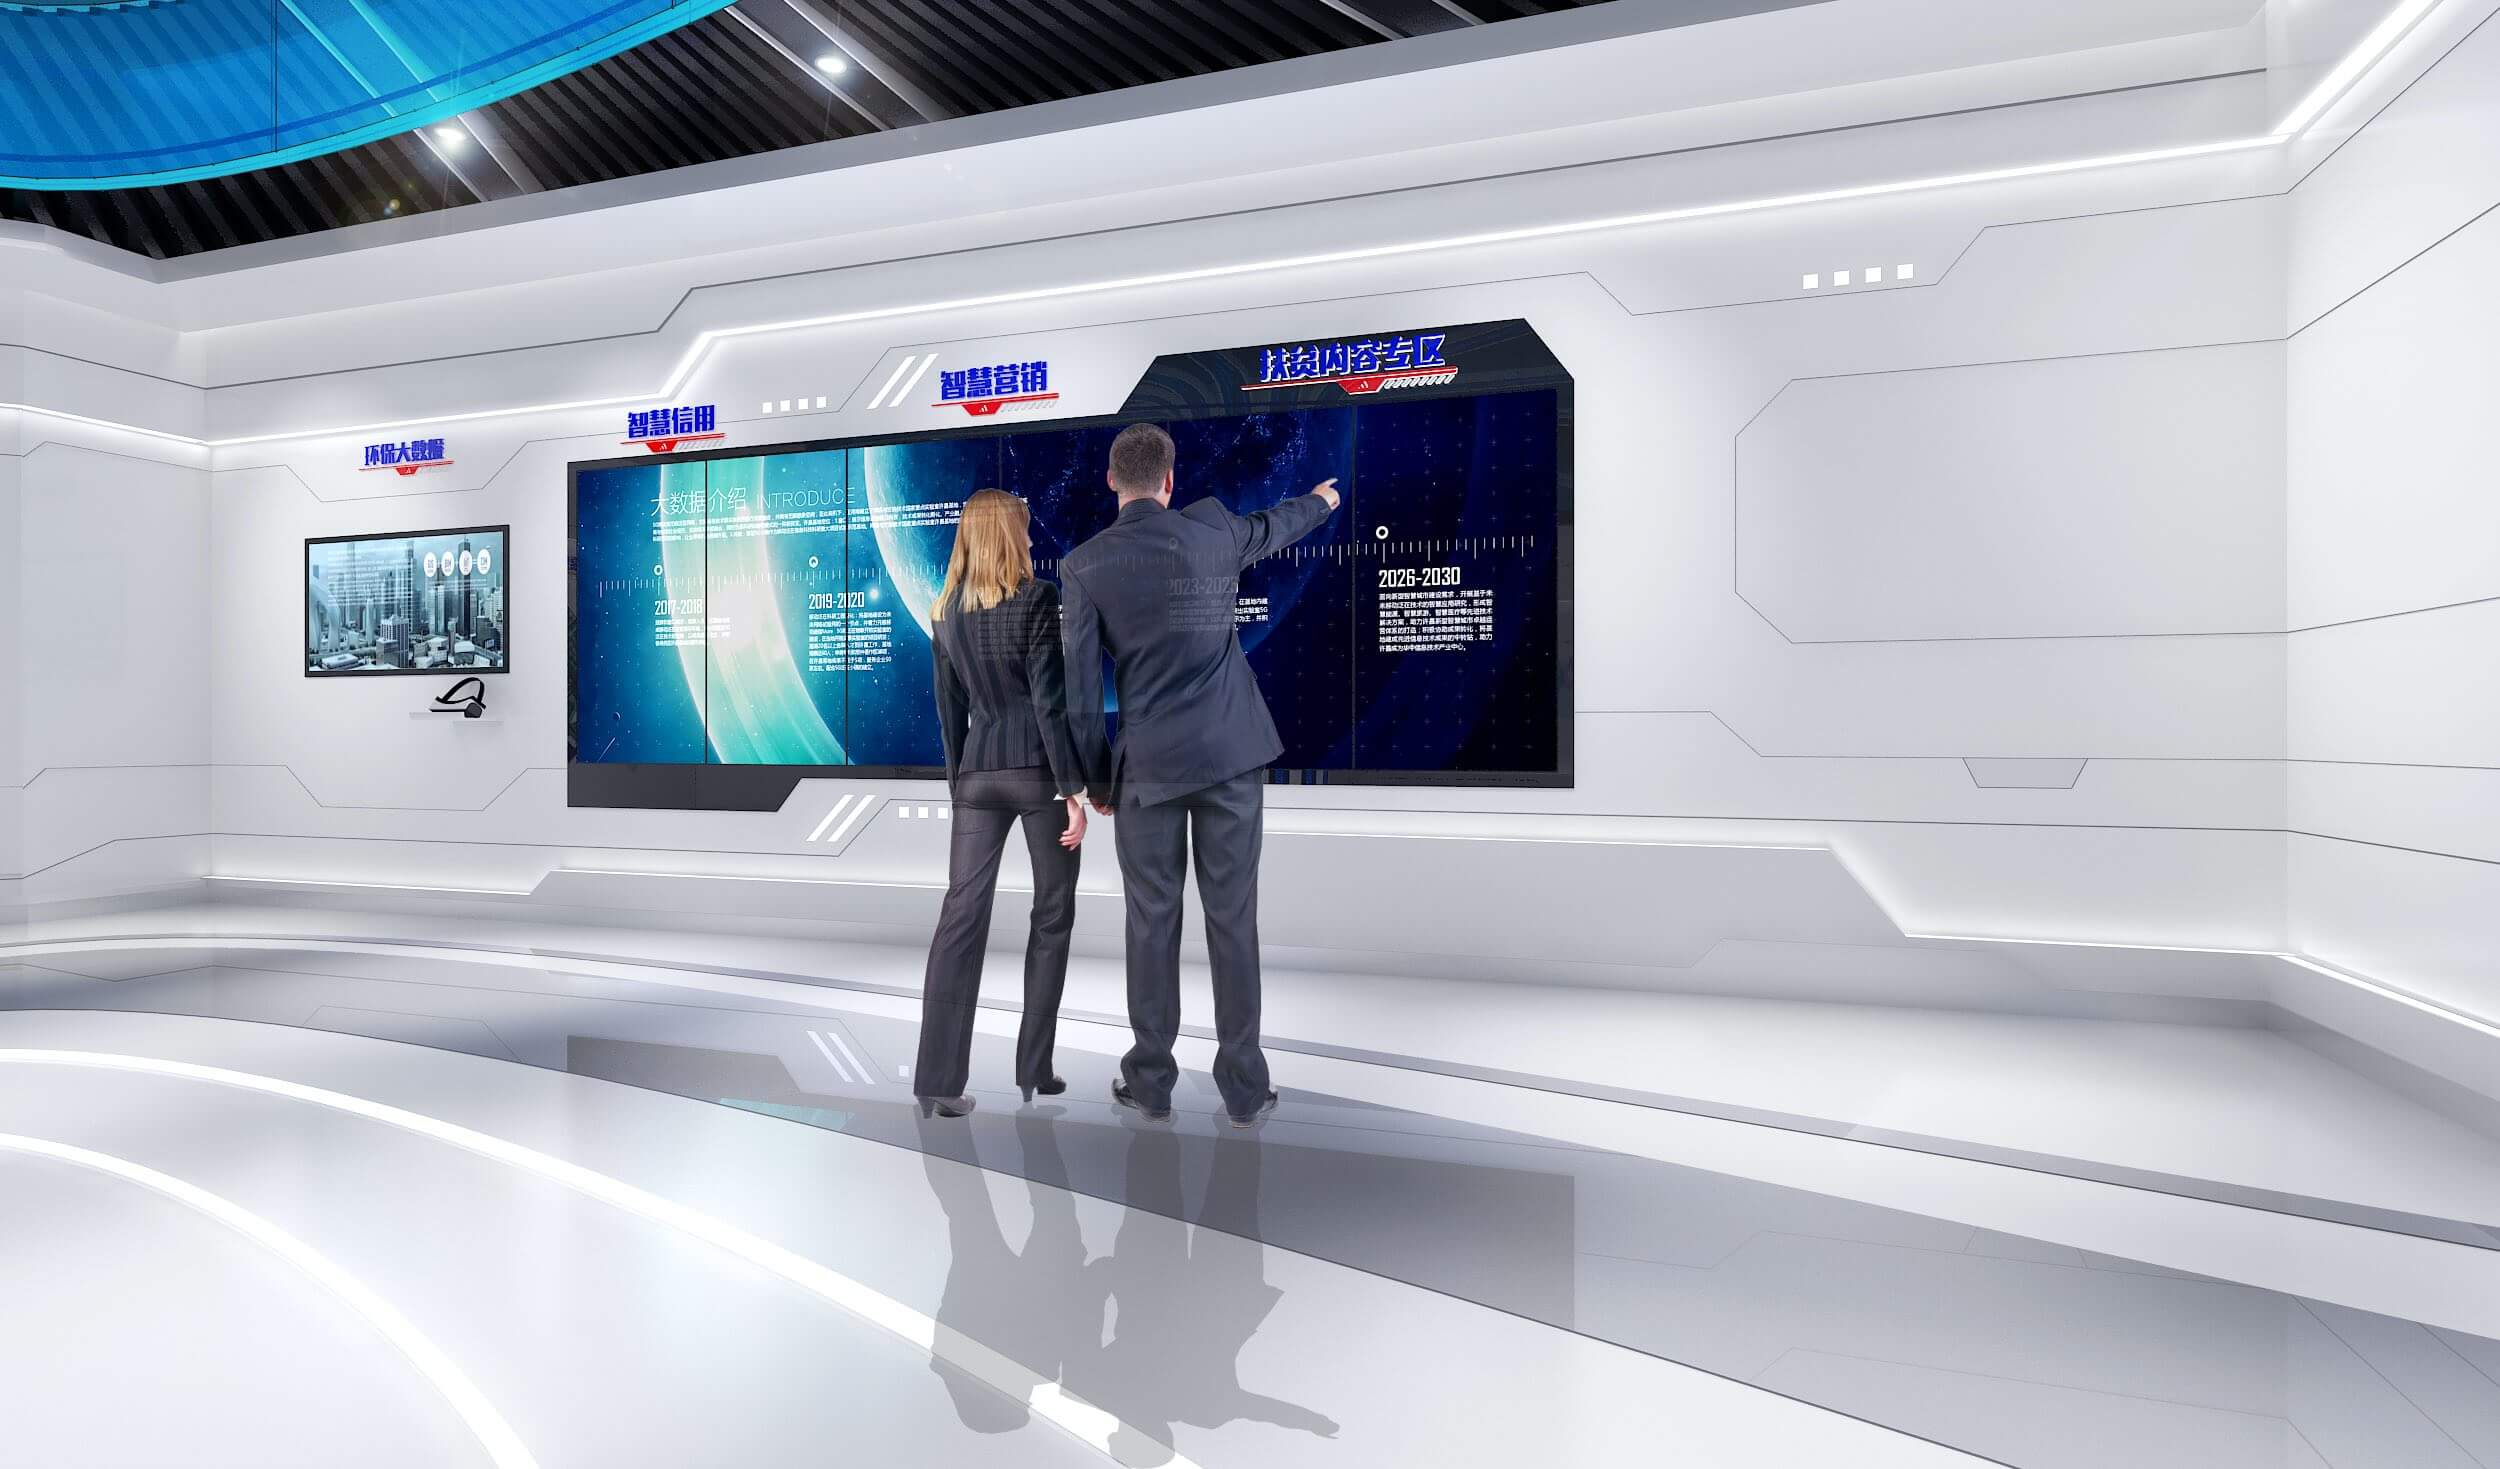 图片展示两位穿着正装的人站在一个现代化控制室内，正指着墙上的大型屏幕，屏幕显示着图表和数据。